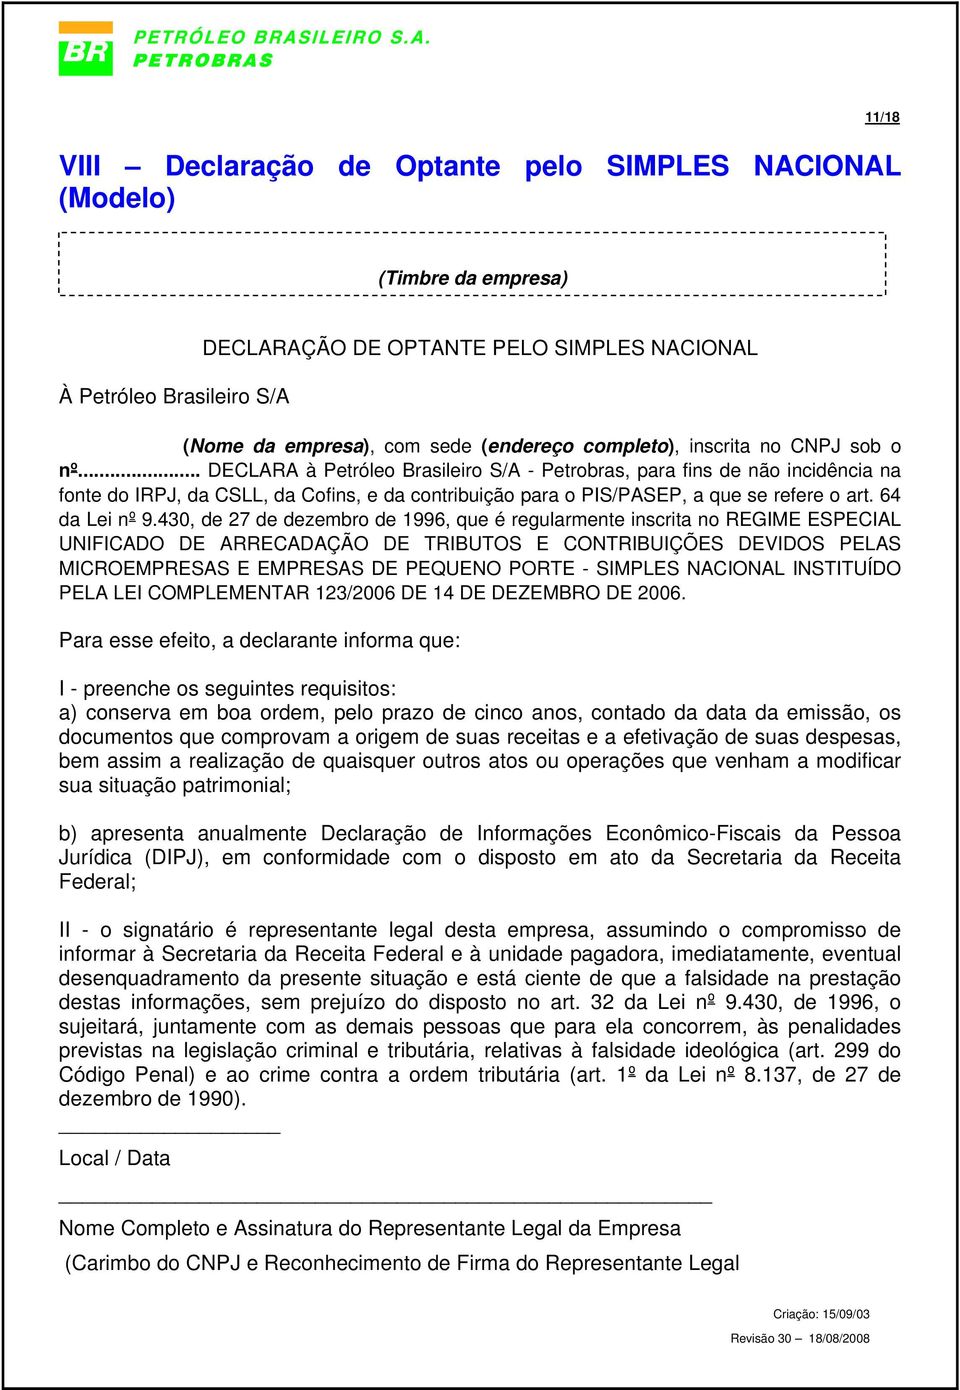 .. DECLARA à Petróleo Brasileiro S/A - Petrobras, para fins de não incidência na fonte do IRPJ, da CSLL, da Cofins, e da contribuição para o PIS/PASEP, a que se refere o art. 64 da Lei nº 9.